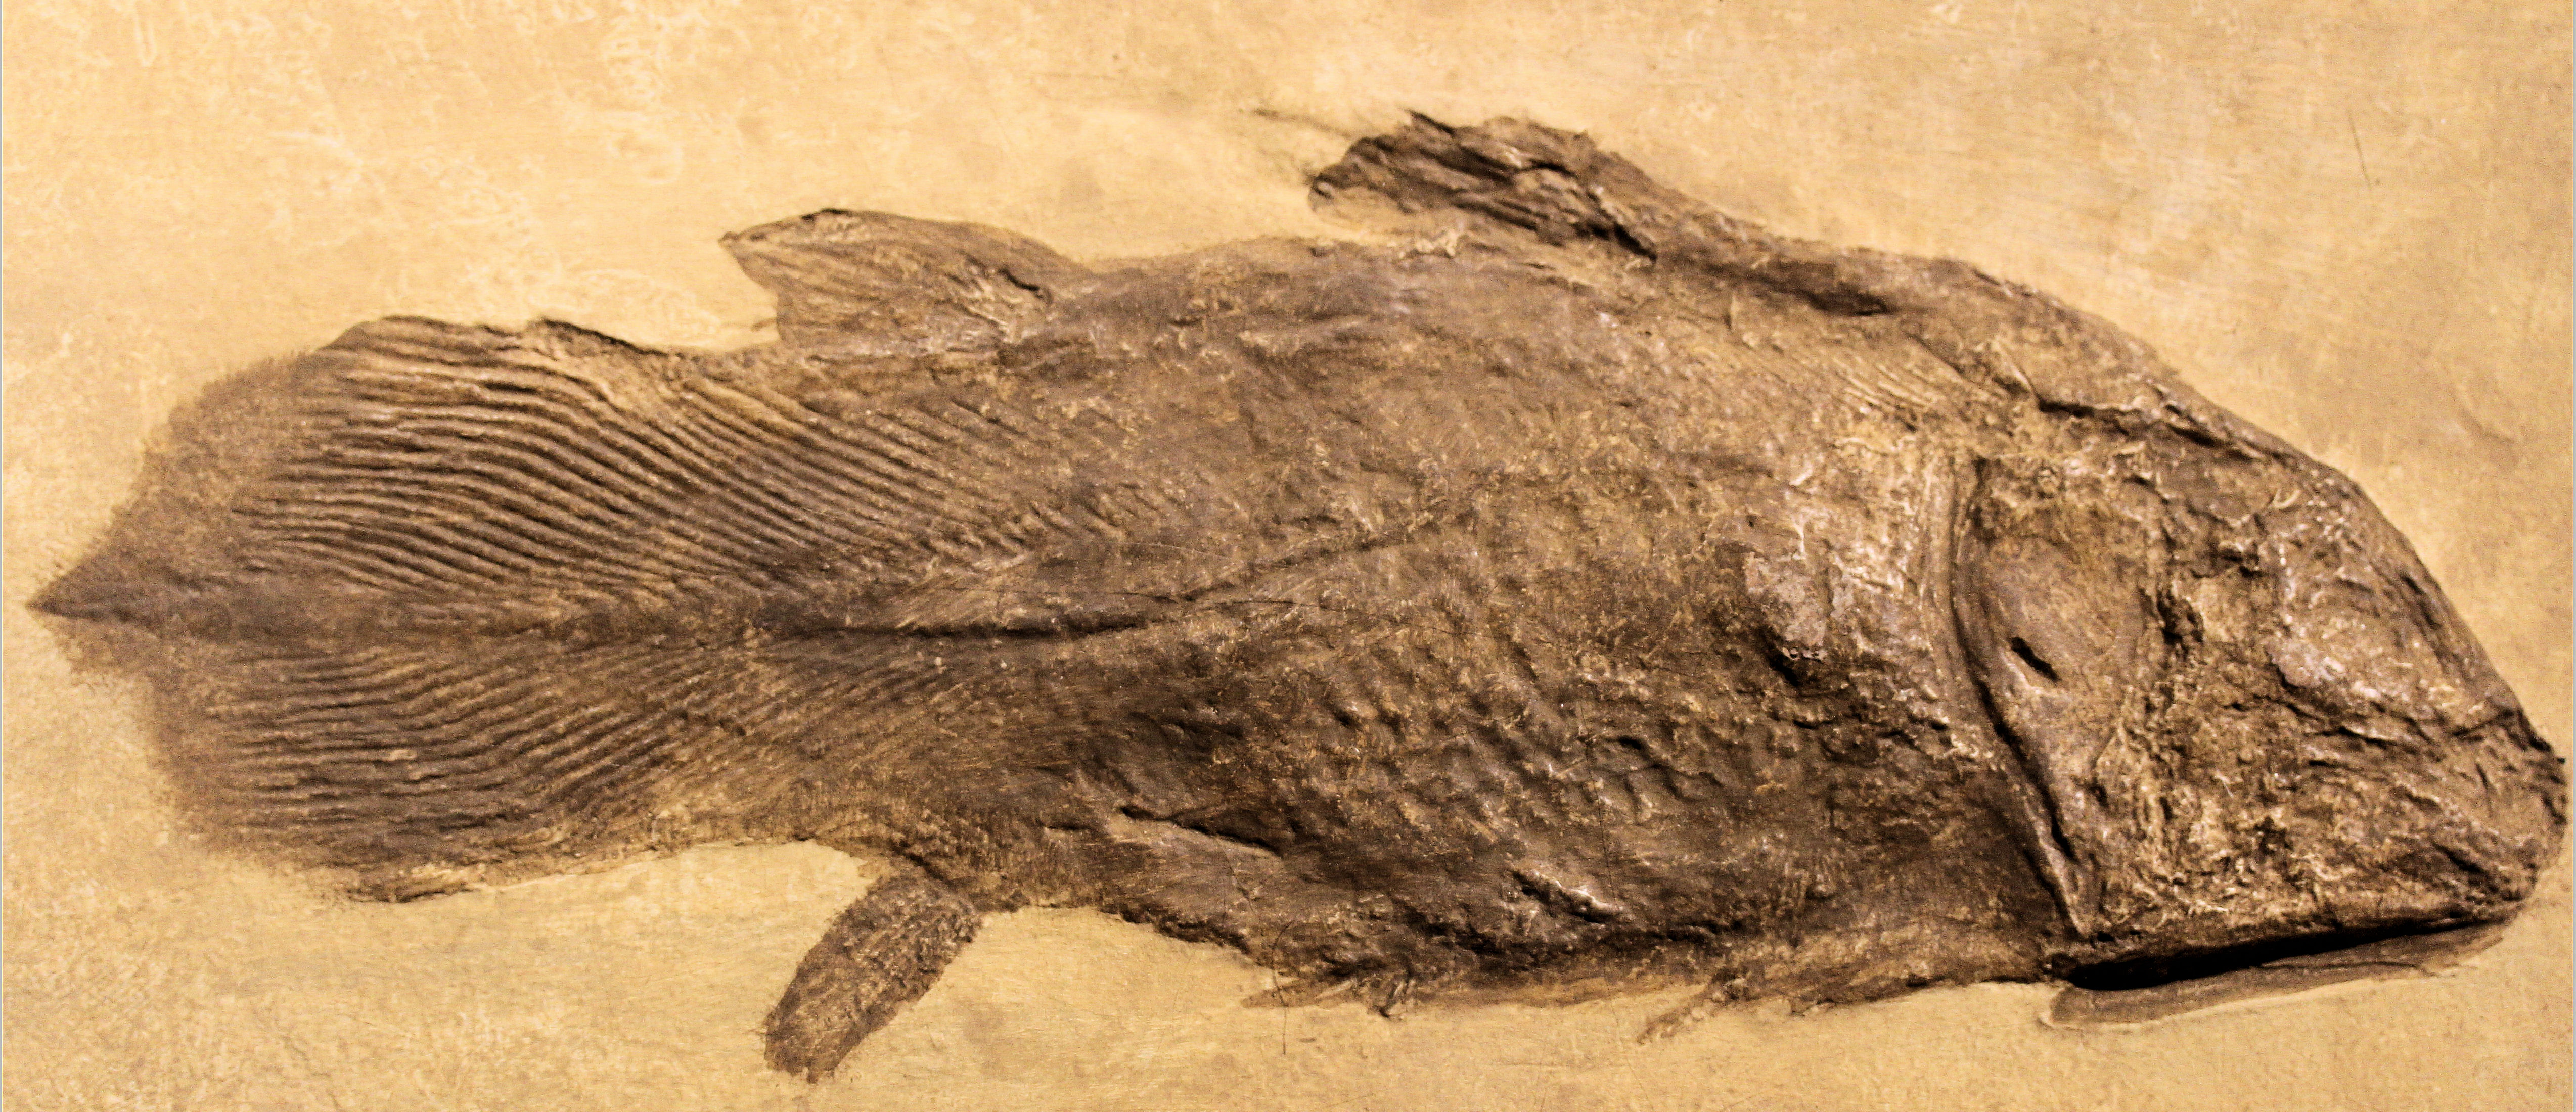 右边一群小鱼,其实是空棘鱼(coelacanth ),这个可是真活化石,至今任然